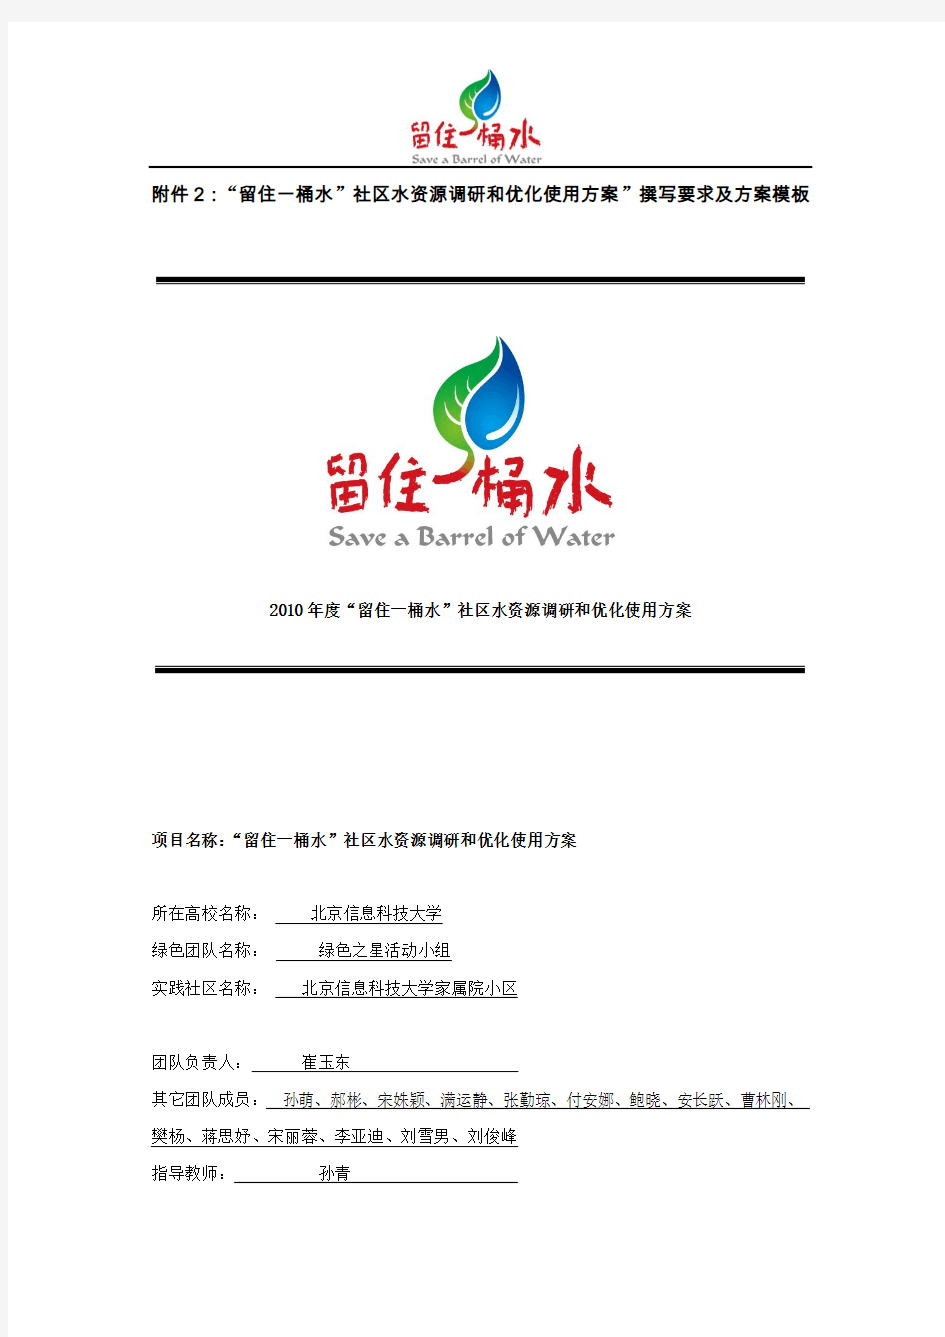 可口可乐2010年度留住一桶水,水龙头开一半 活动方案全程图片记录,北京信息科技大学